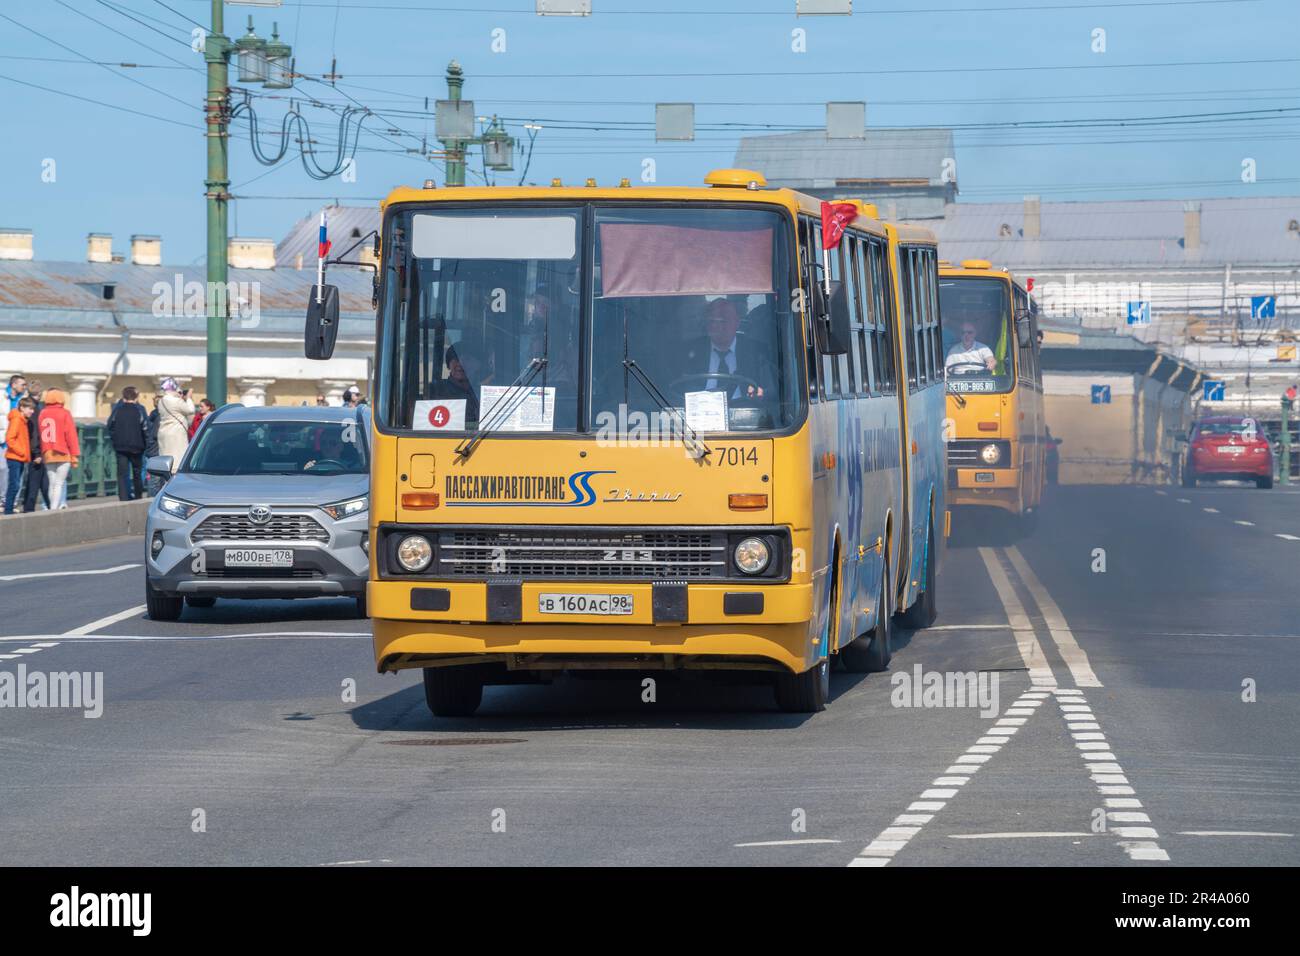 Hungary's Ikarus Buses Coming Back